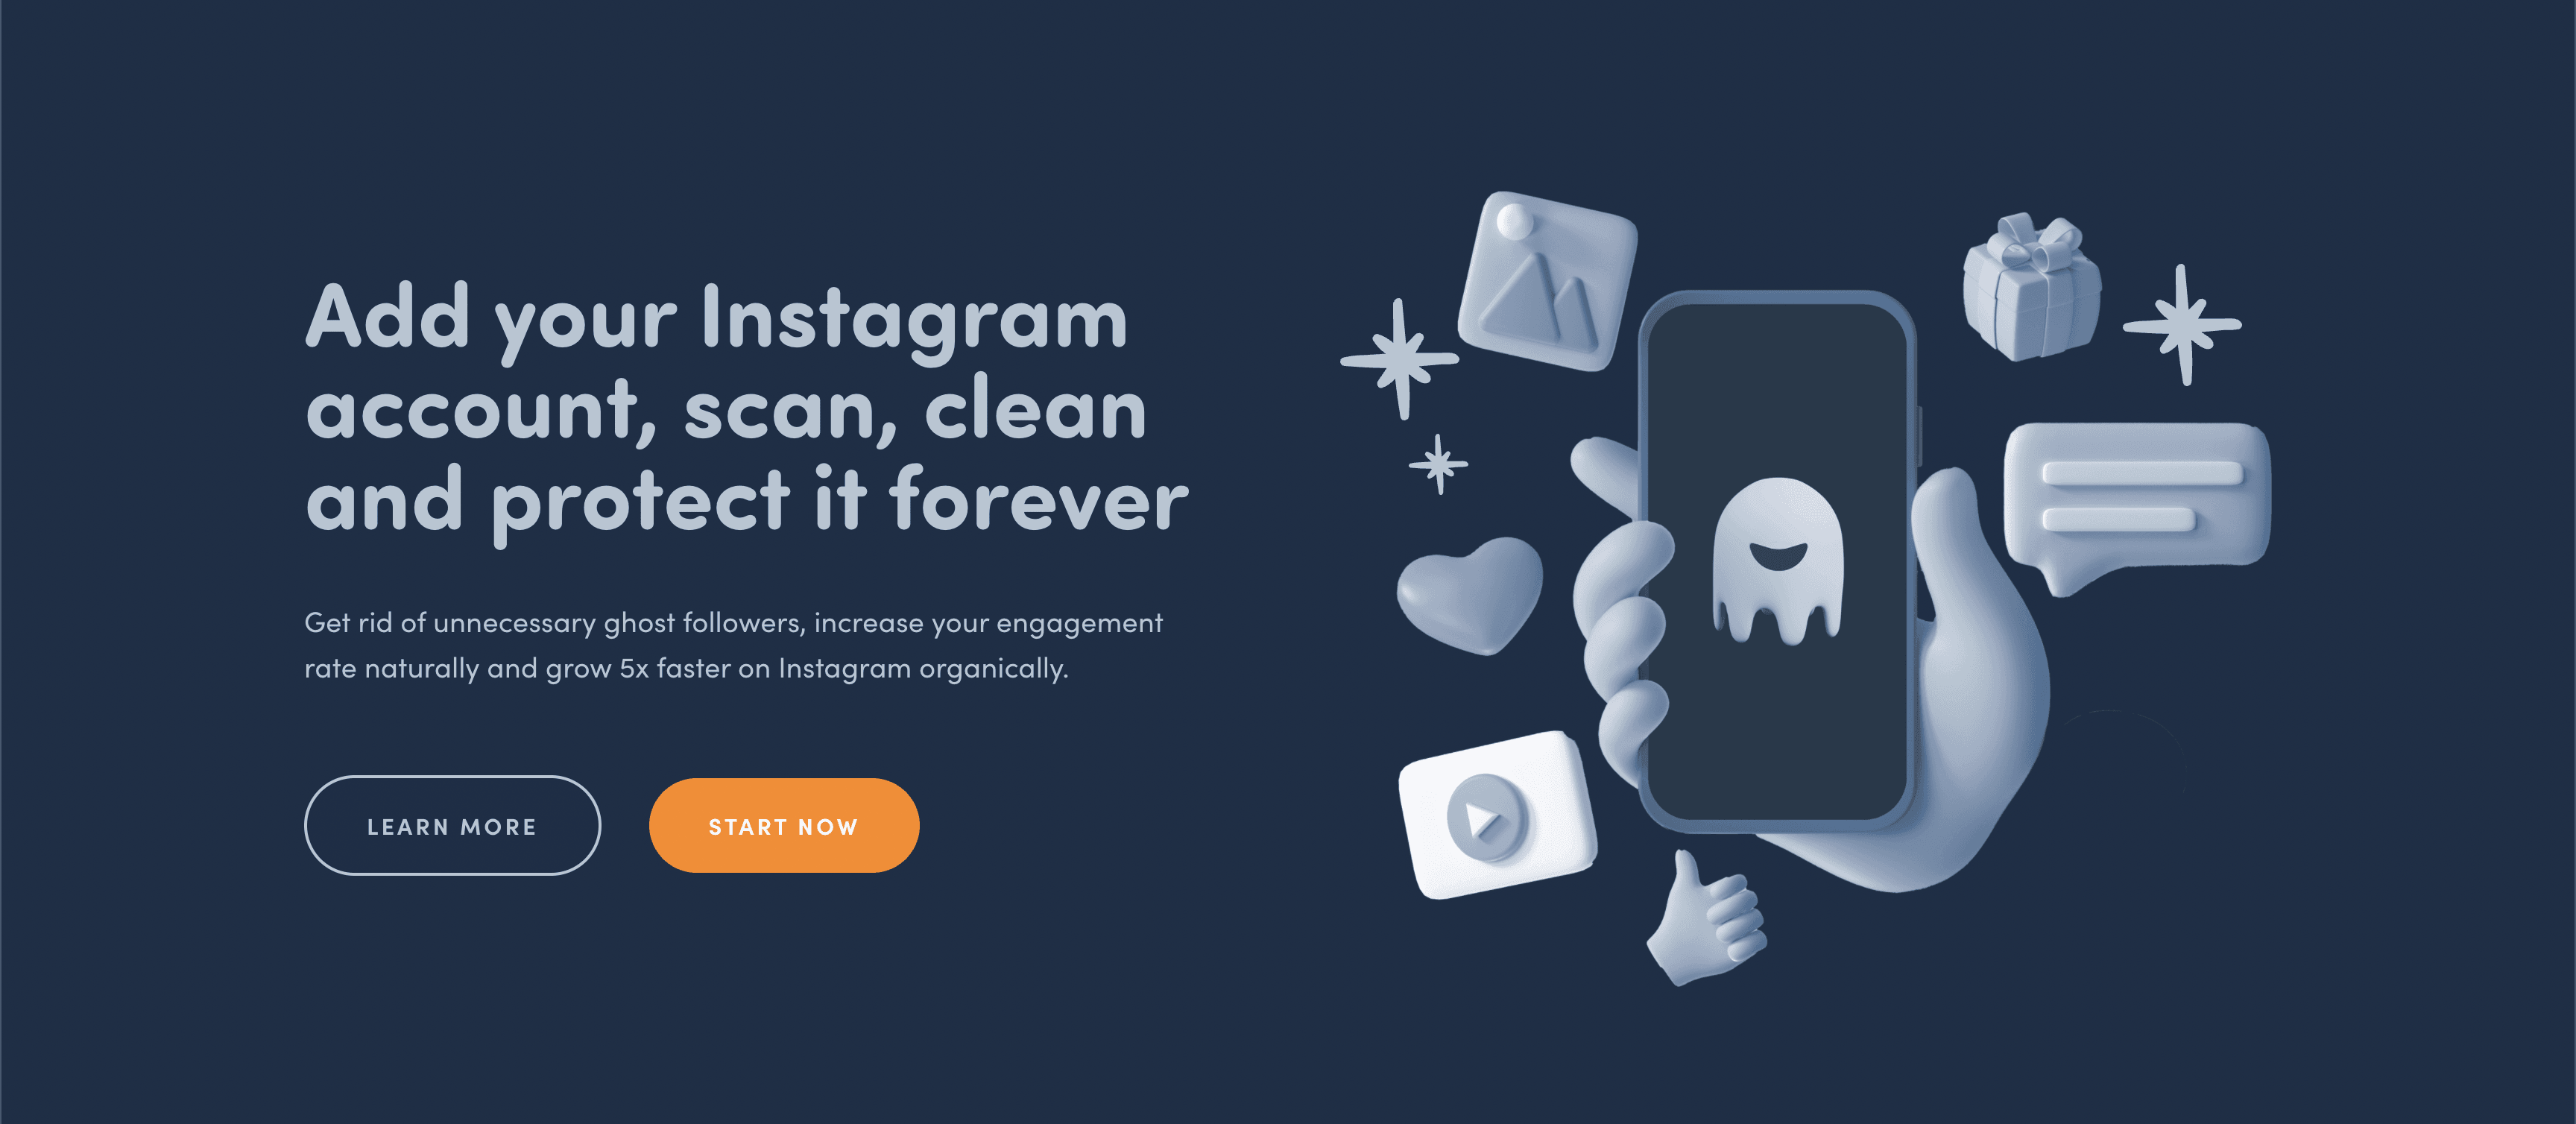 Fügen Sie einen Instagram-Konto-Scan hinzu und schützen Sie sich mit einer Erklärung und Anleitung zum Entfernen + App für immer vor Ghost-Followern.